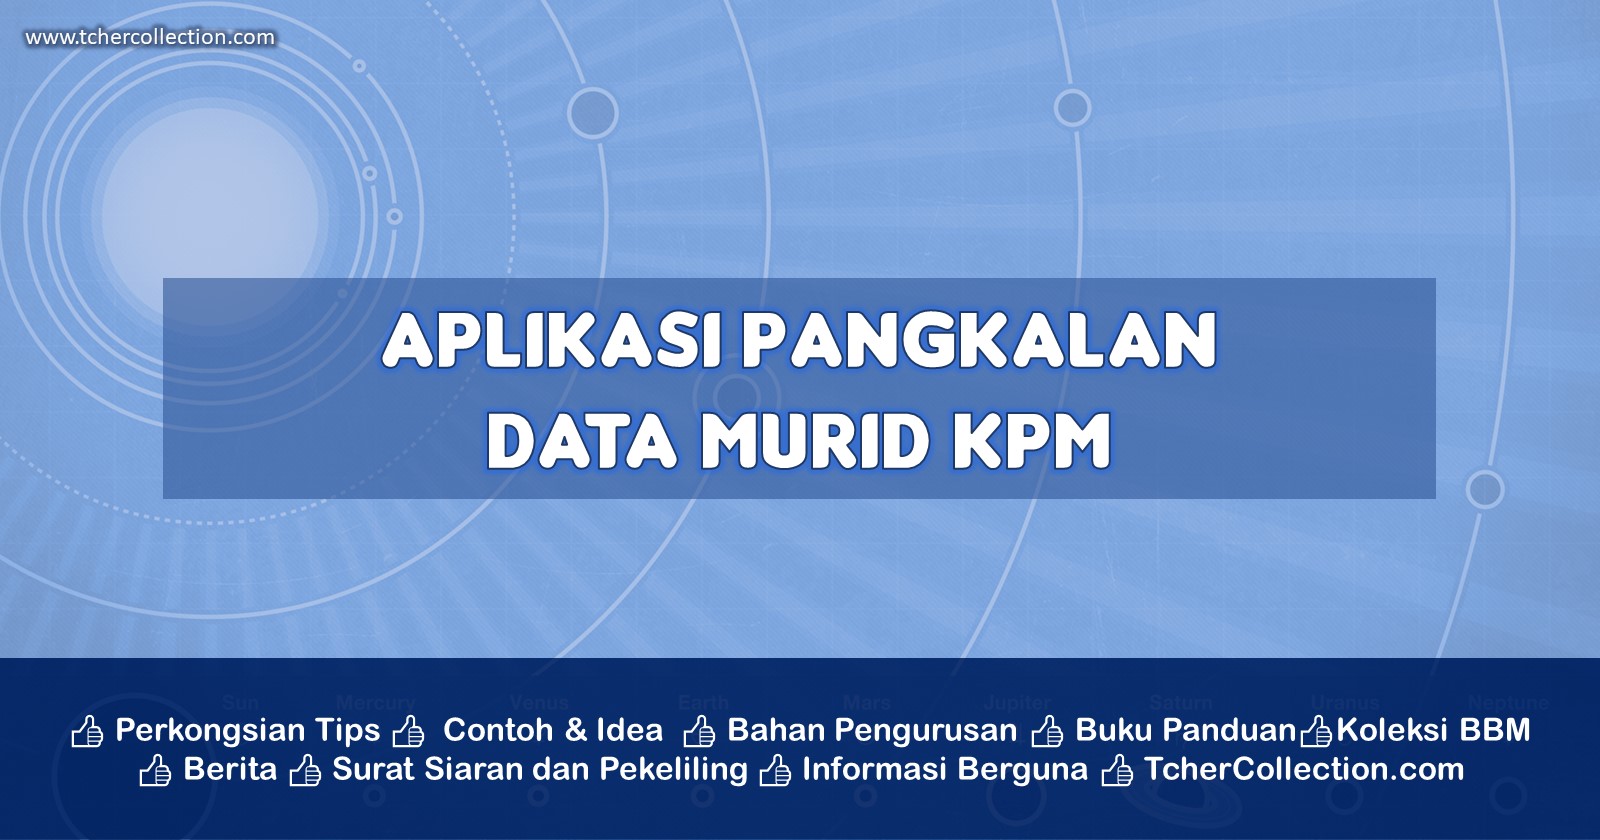 Murid apdm.moe.gov.my data APDM: Login